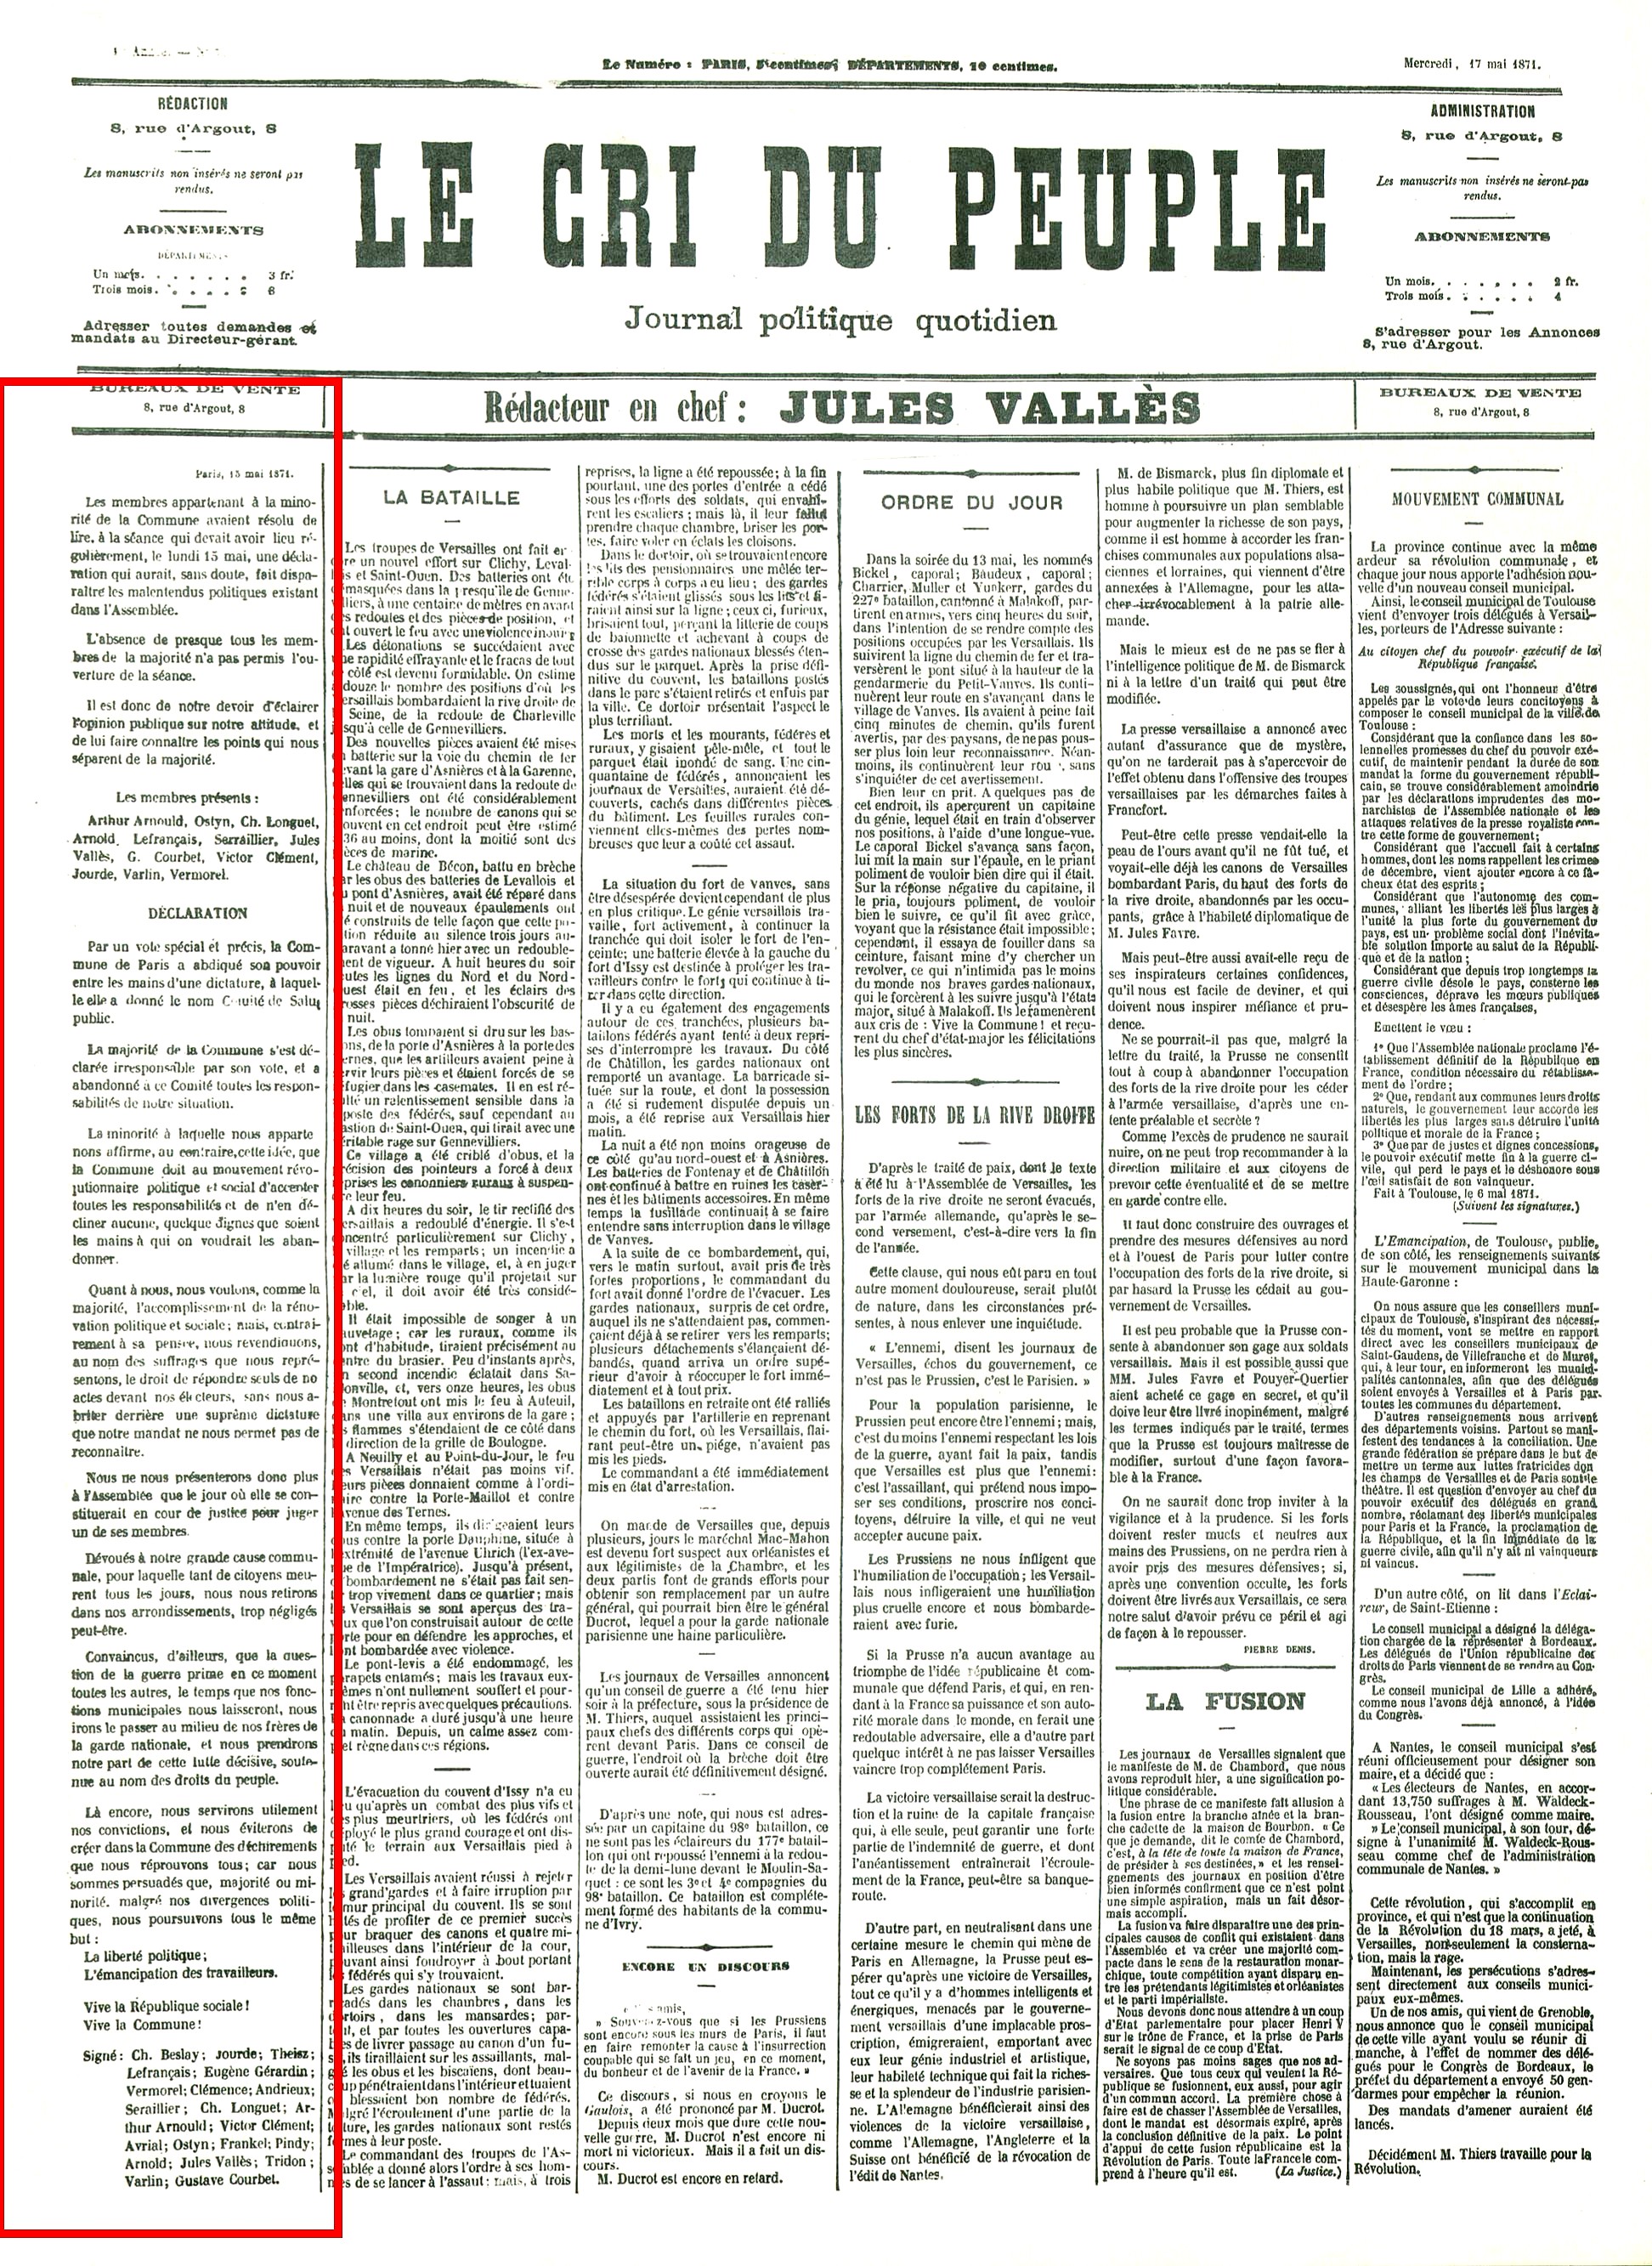 Le Cri du Peuple du 17 mai 1871 (pour lire l'article, cliquer sur l'image)